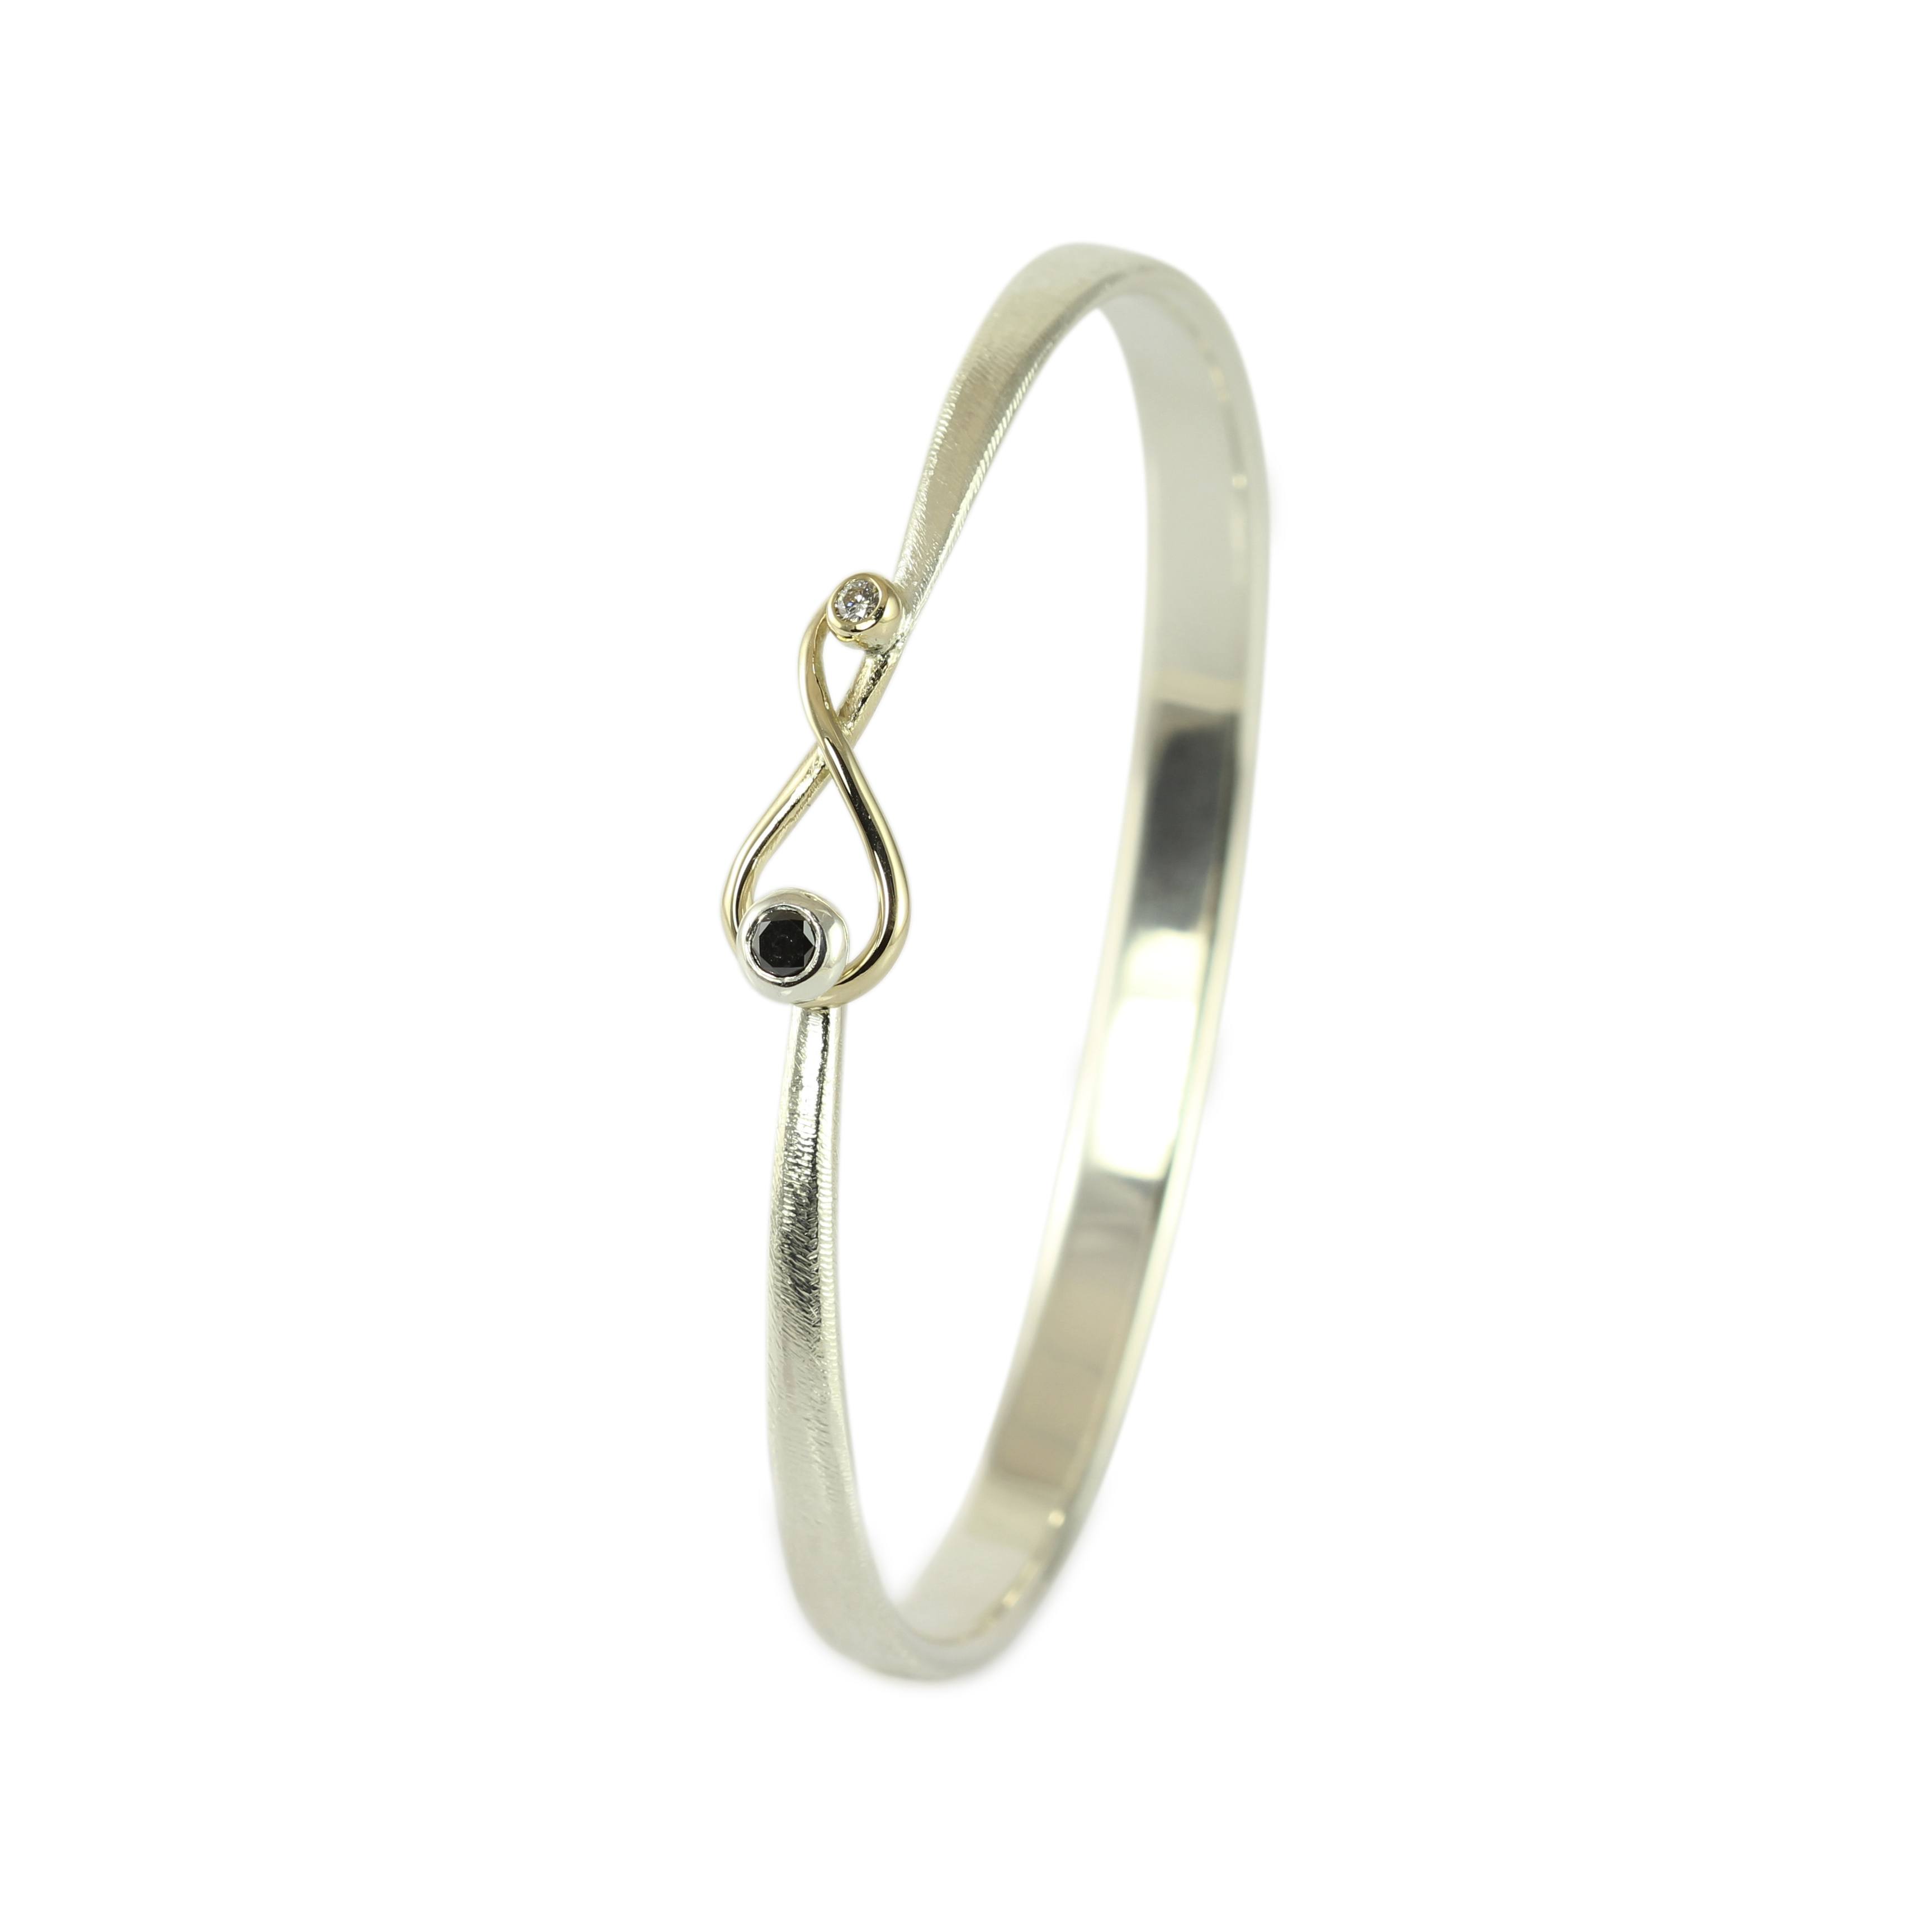 Skuffelse sæt ind sagde Håndlavede armbånd - Unikke smykker hos Castens - Eternity armbånd med sort  diamant